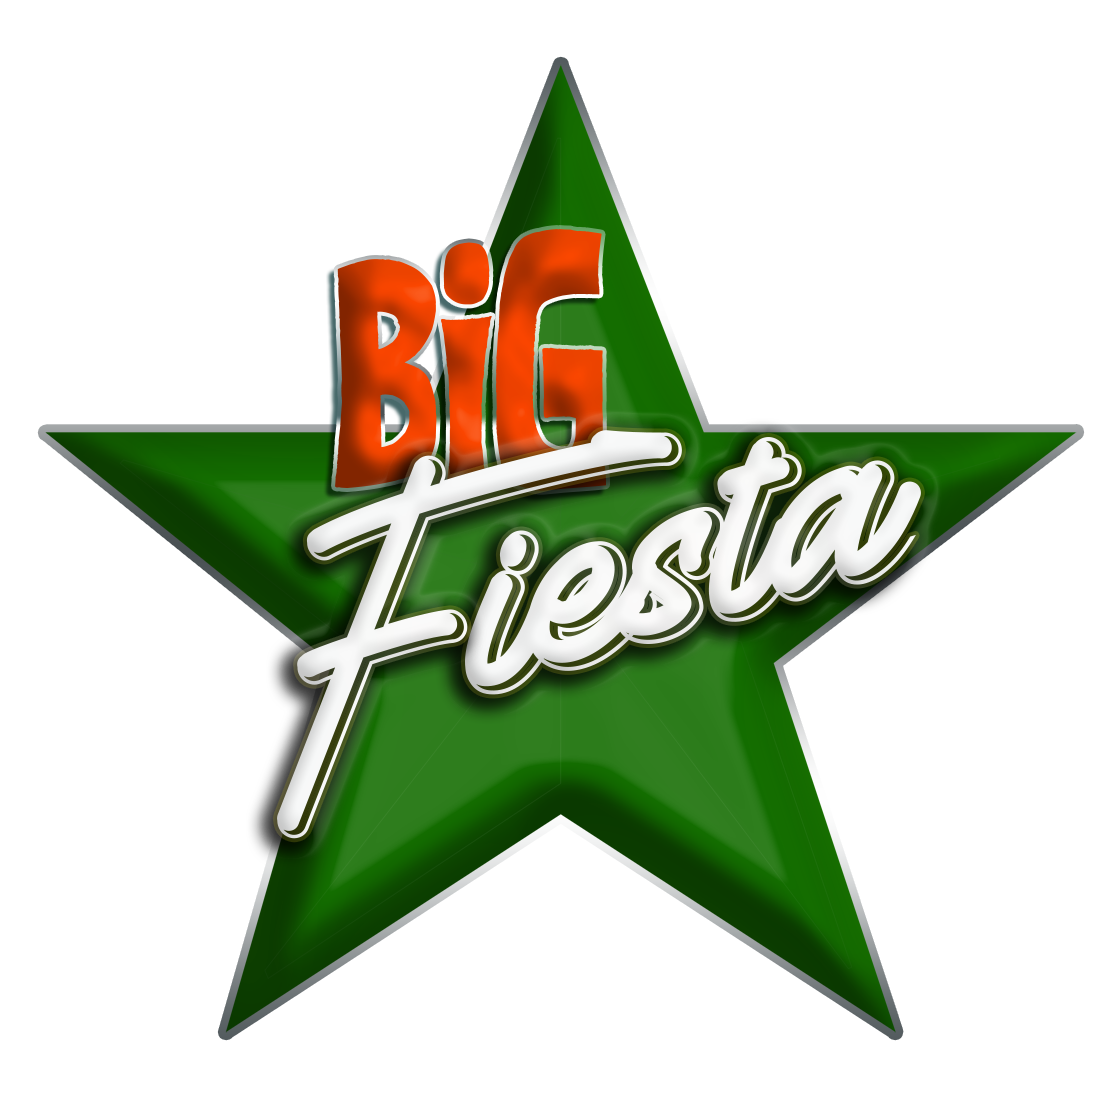 Big Fiesta